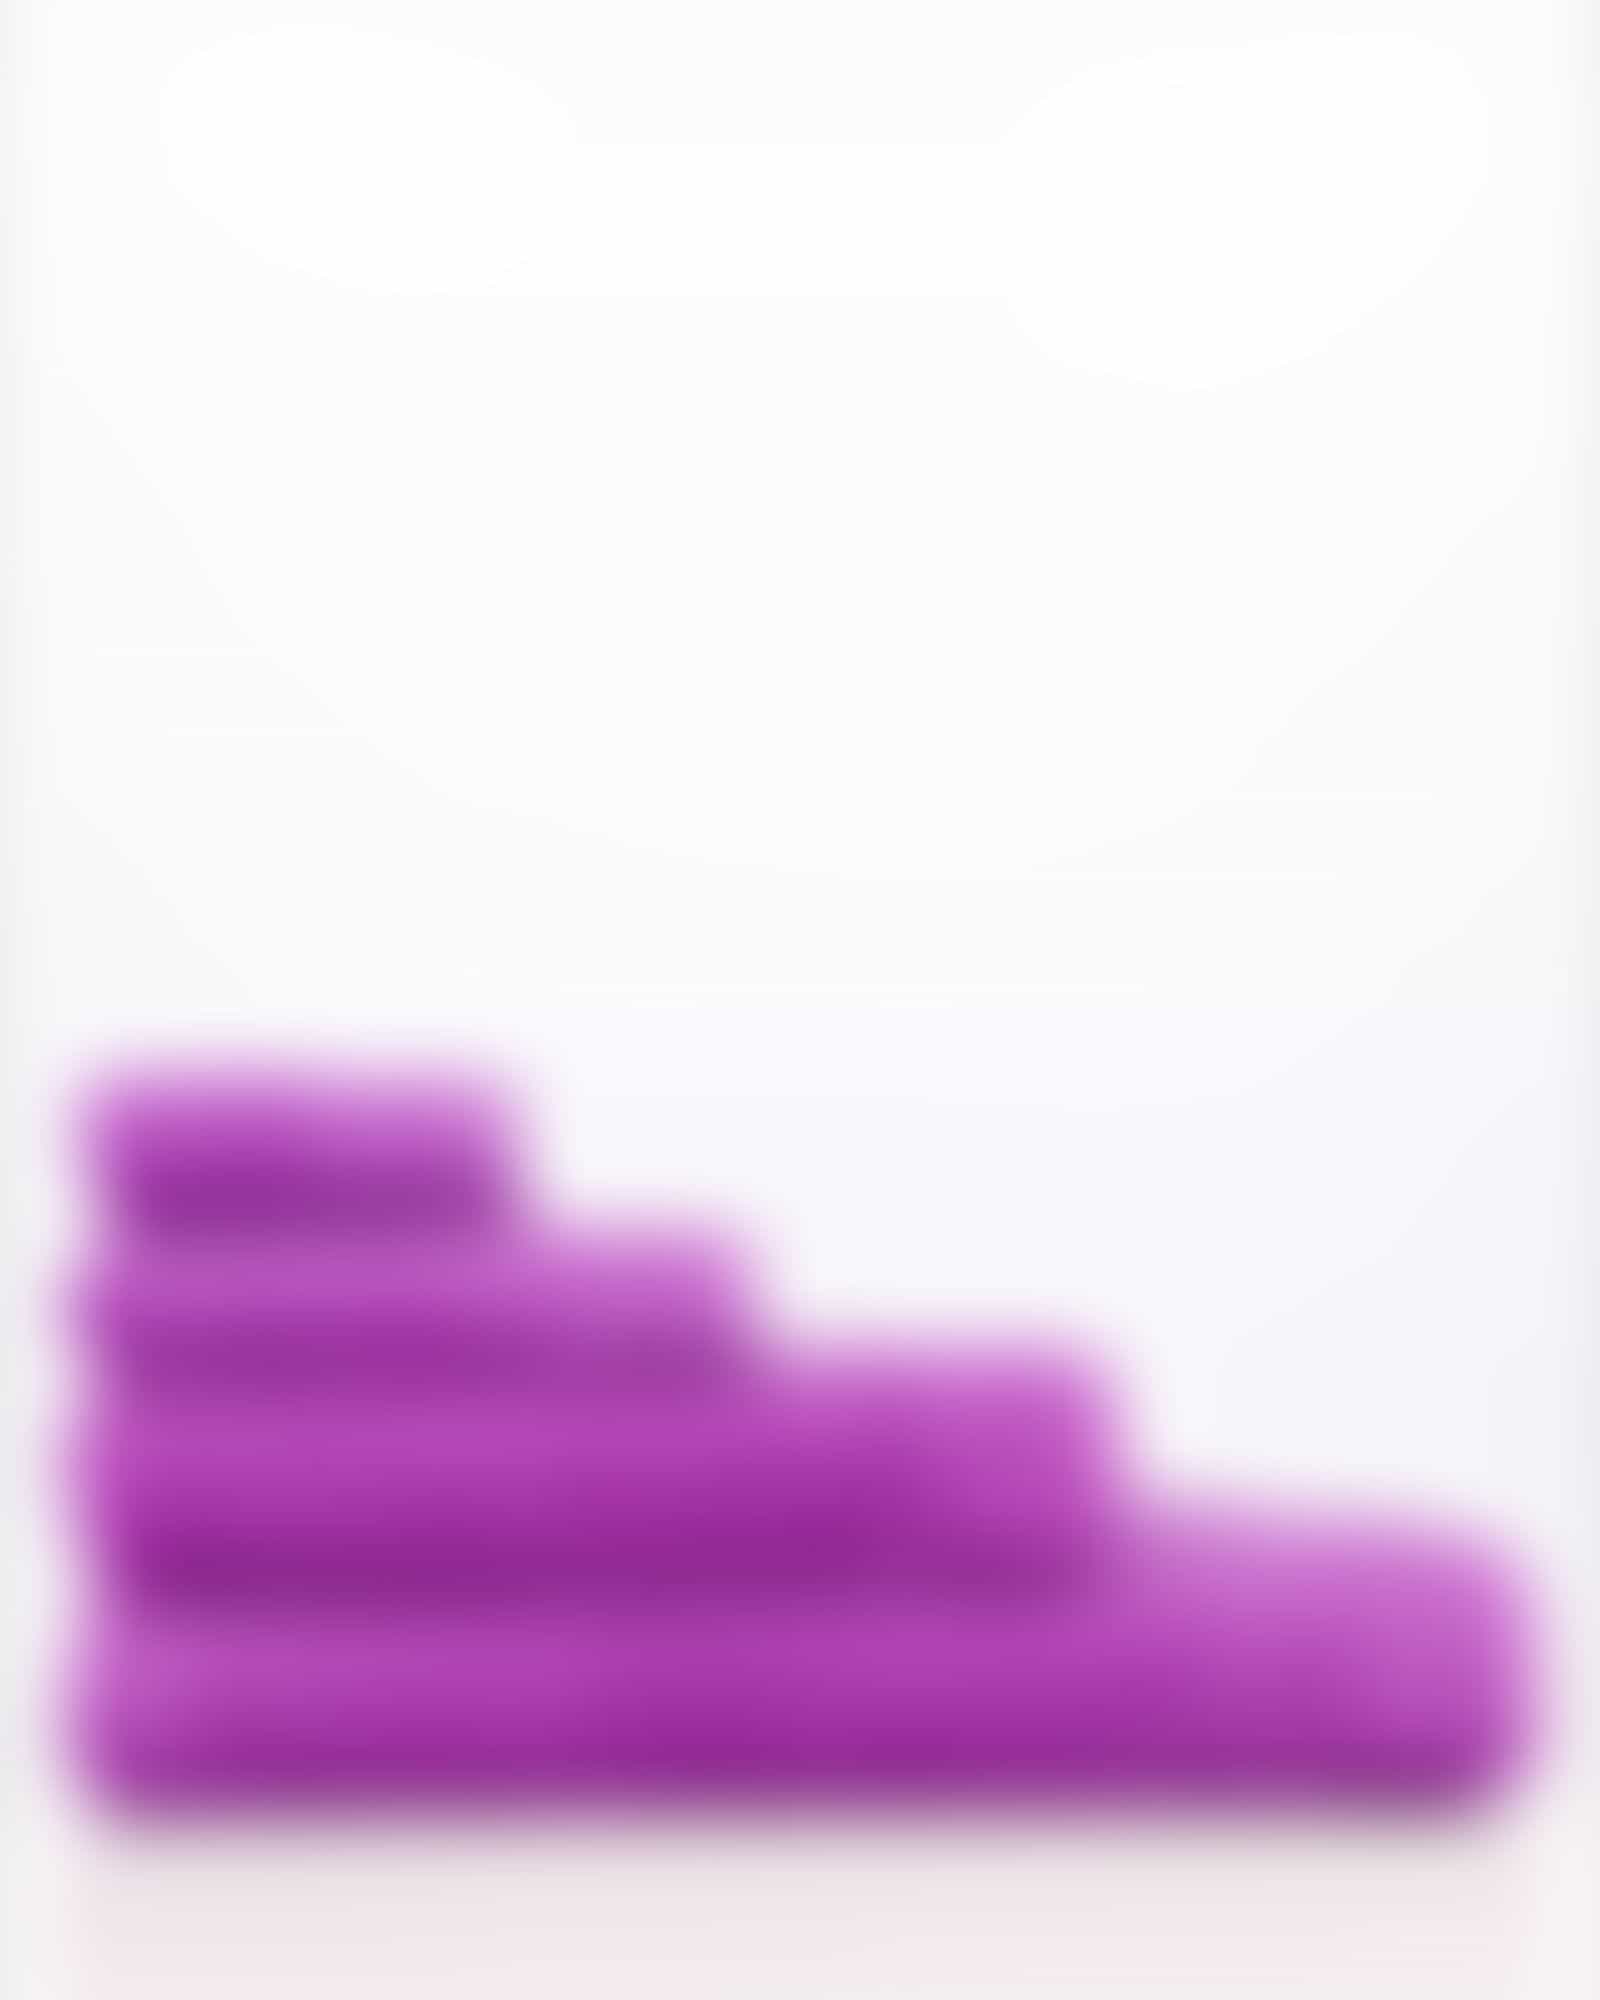 Vossen Handtücher Calypso Feeling - Farbe: lollipop - 8460 - Duschtuch 67x140 cm Detailbild 3